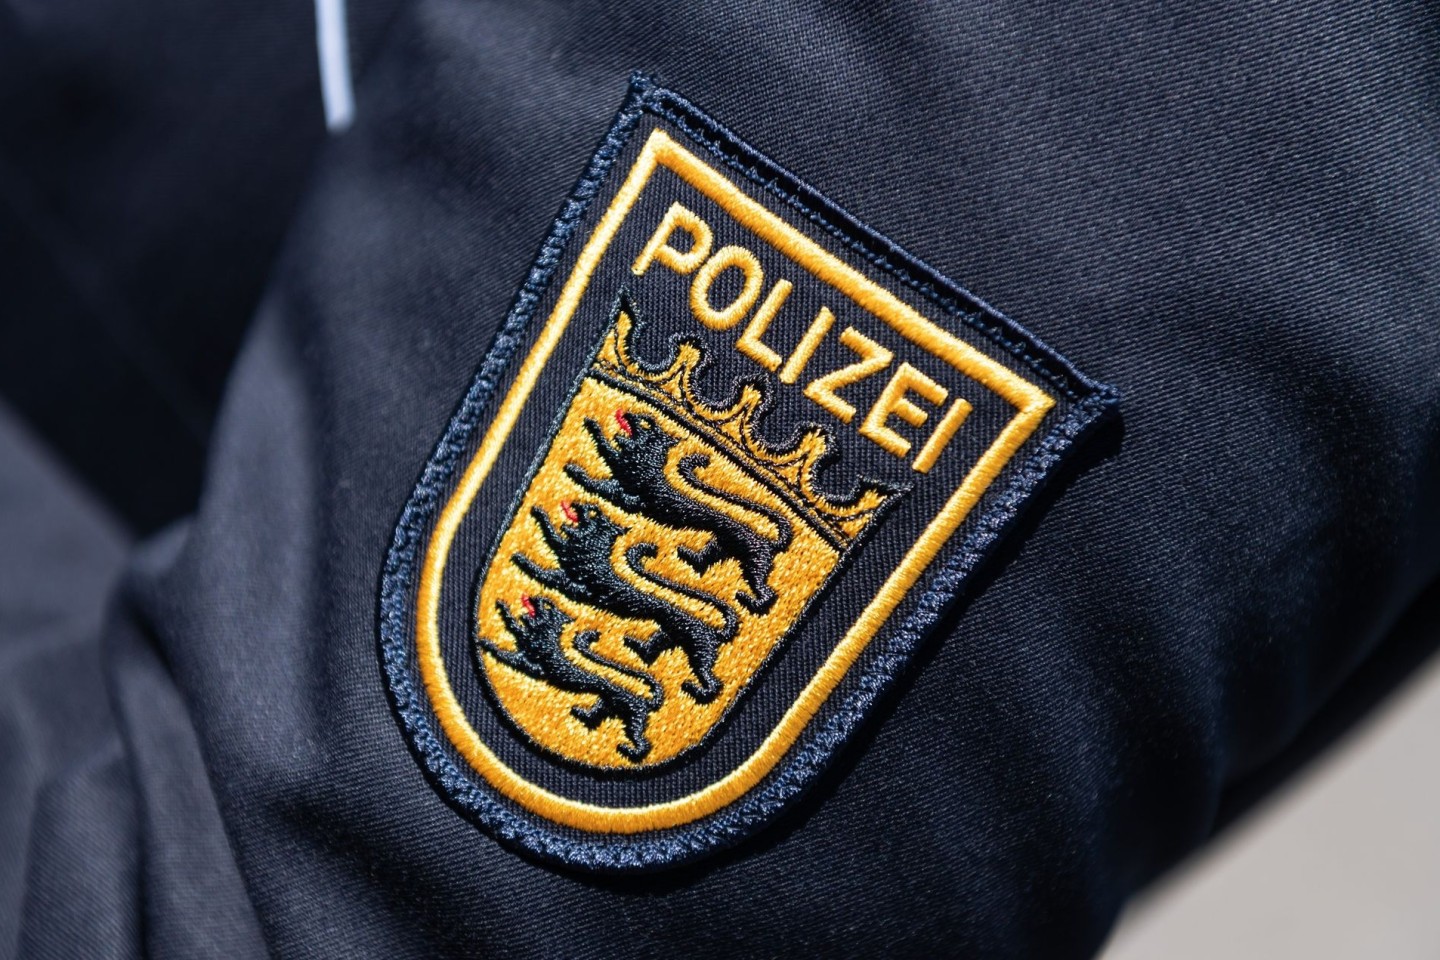 Das Landeskriminalamt Baden-Württemberg will gemeinsam mit der Polizei die Kriminalität in den Griff bekommen.